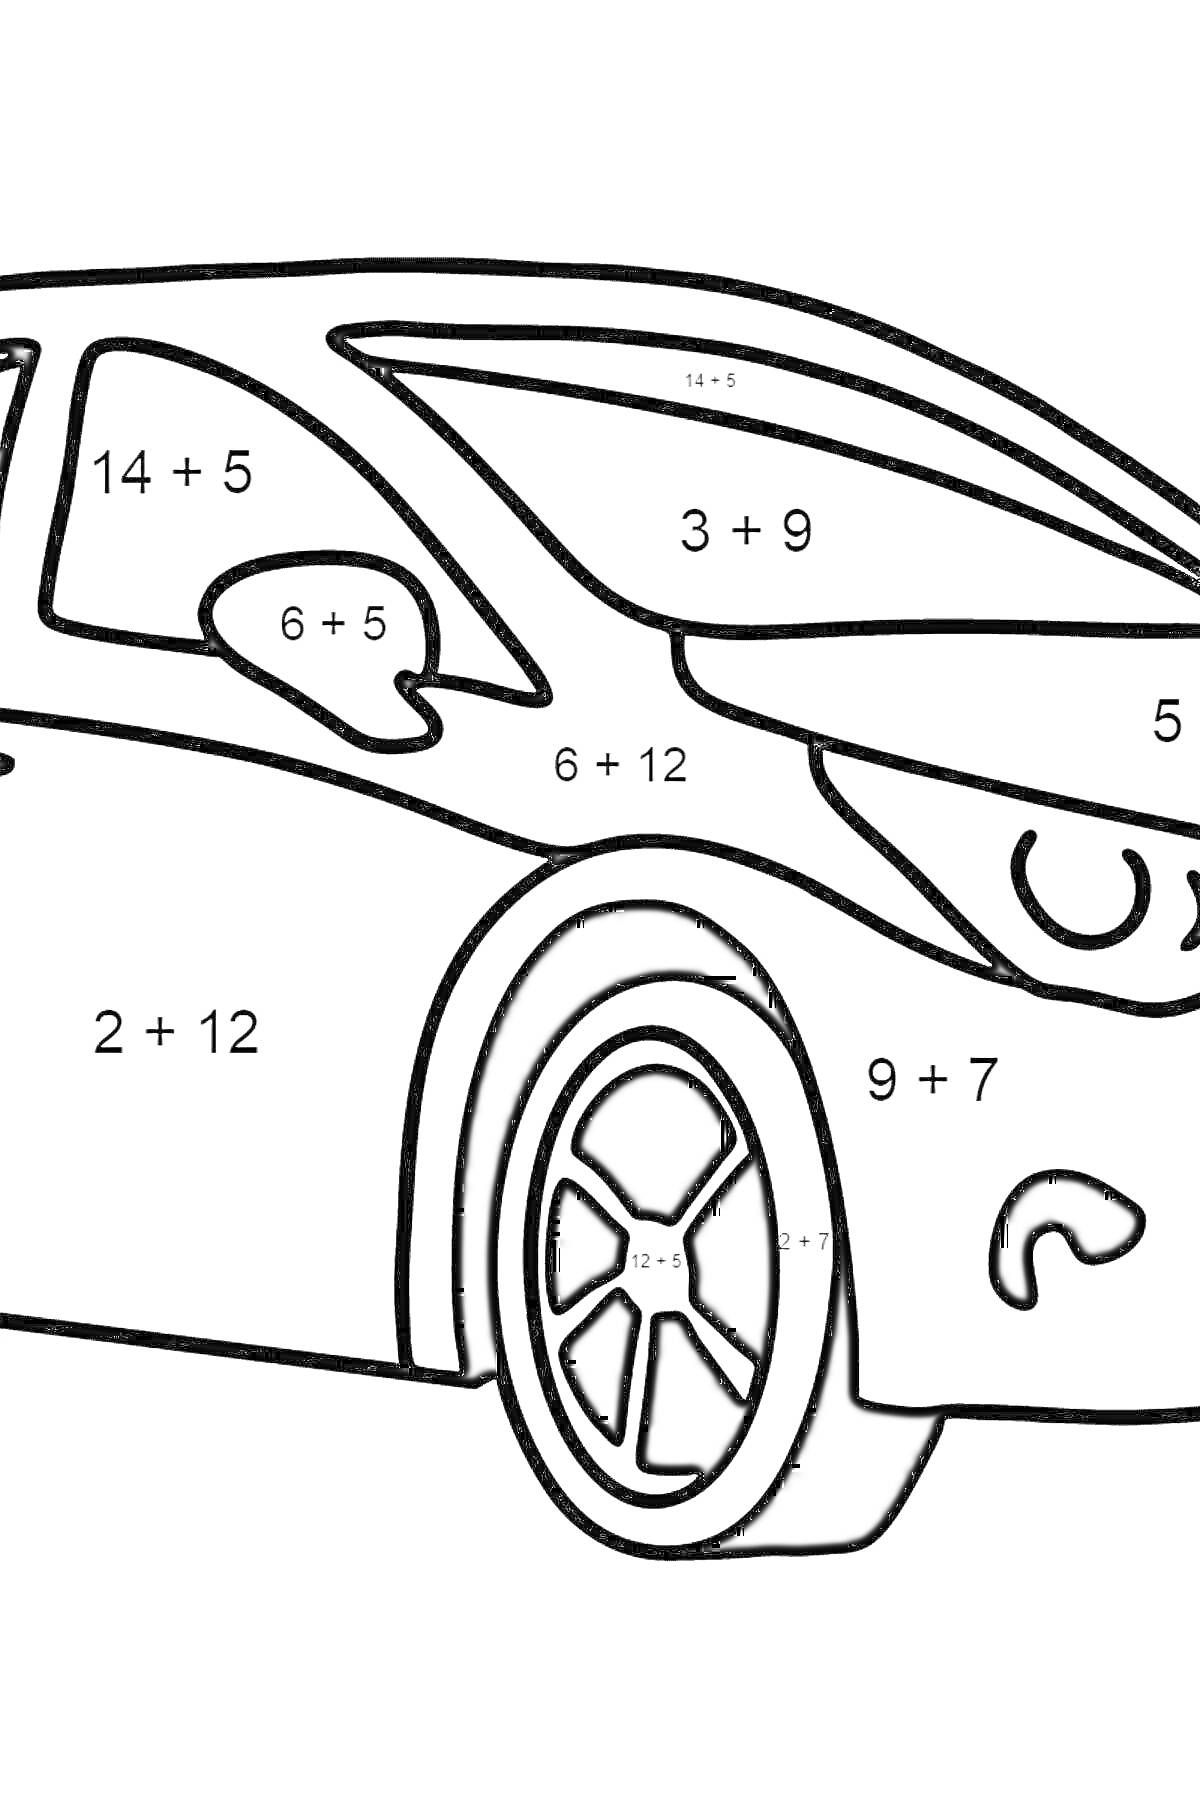 Раскраска Раскраска с примерами сложения, изображающая машину с элементами кузова, окно, фары и колеса